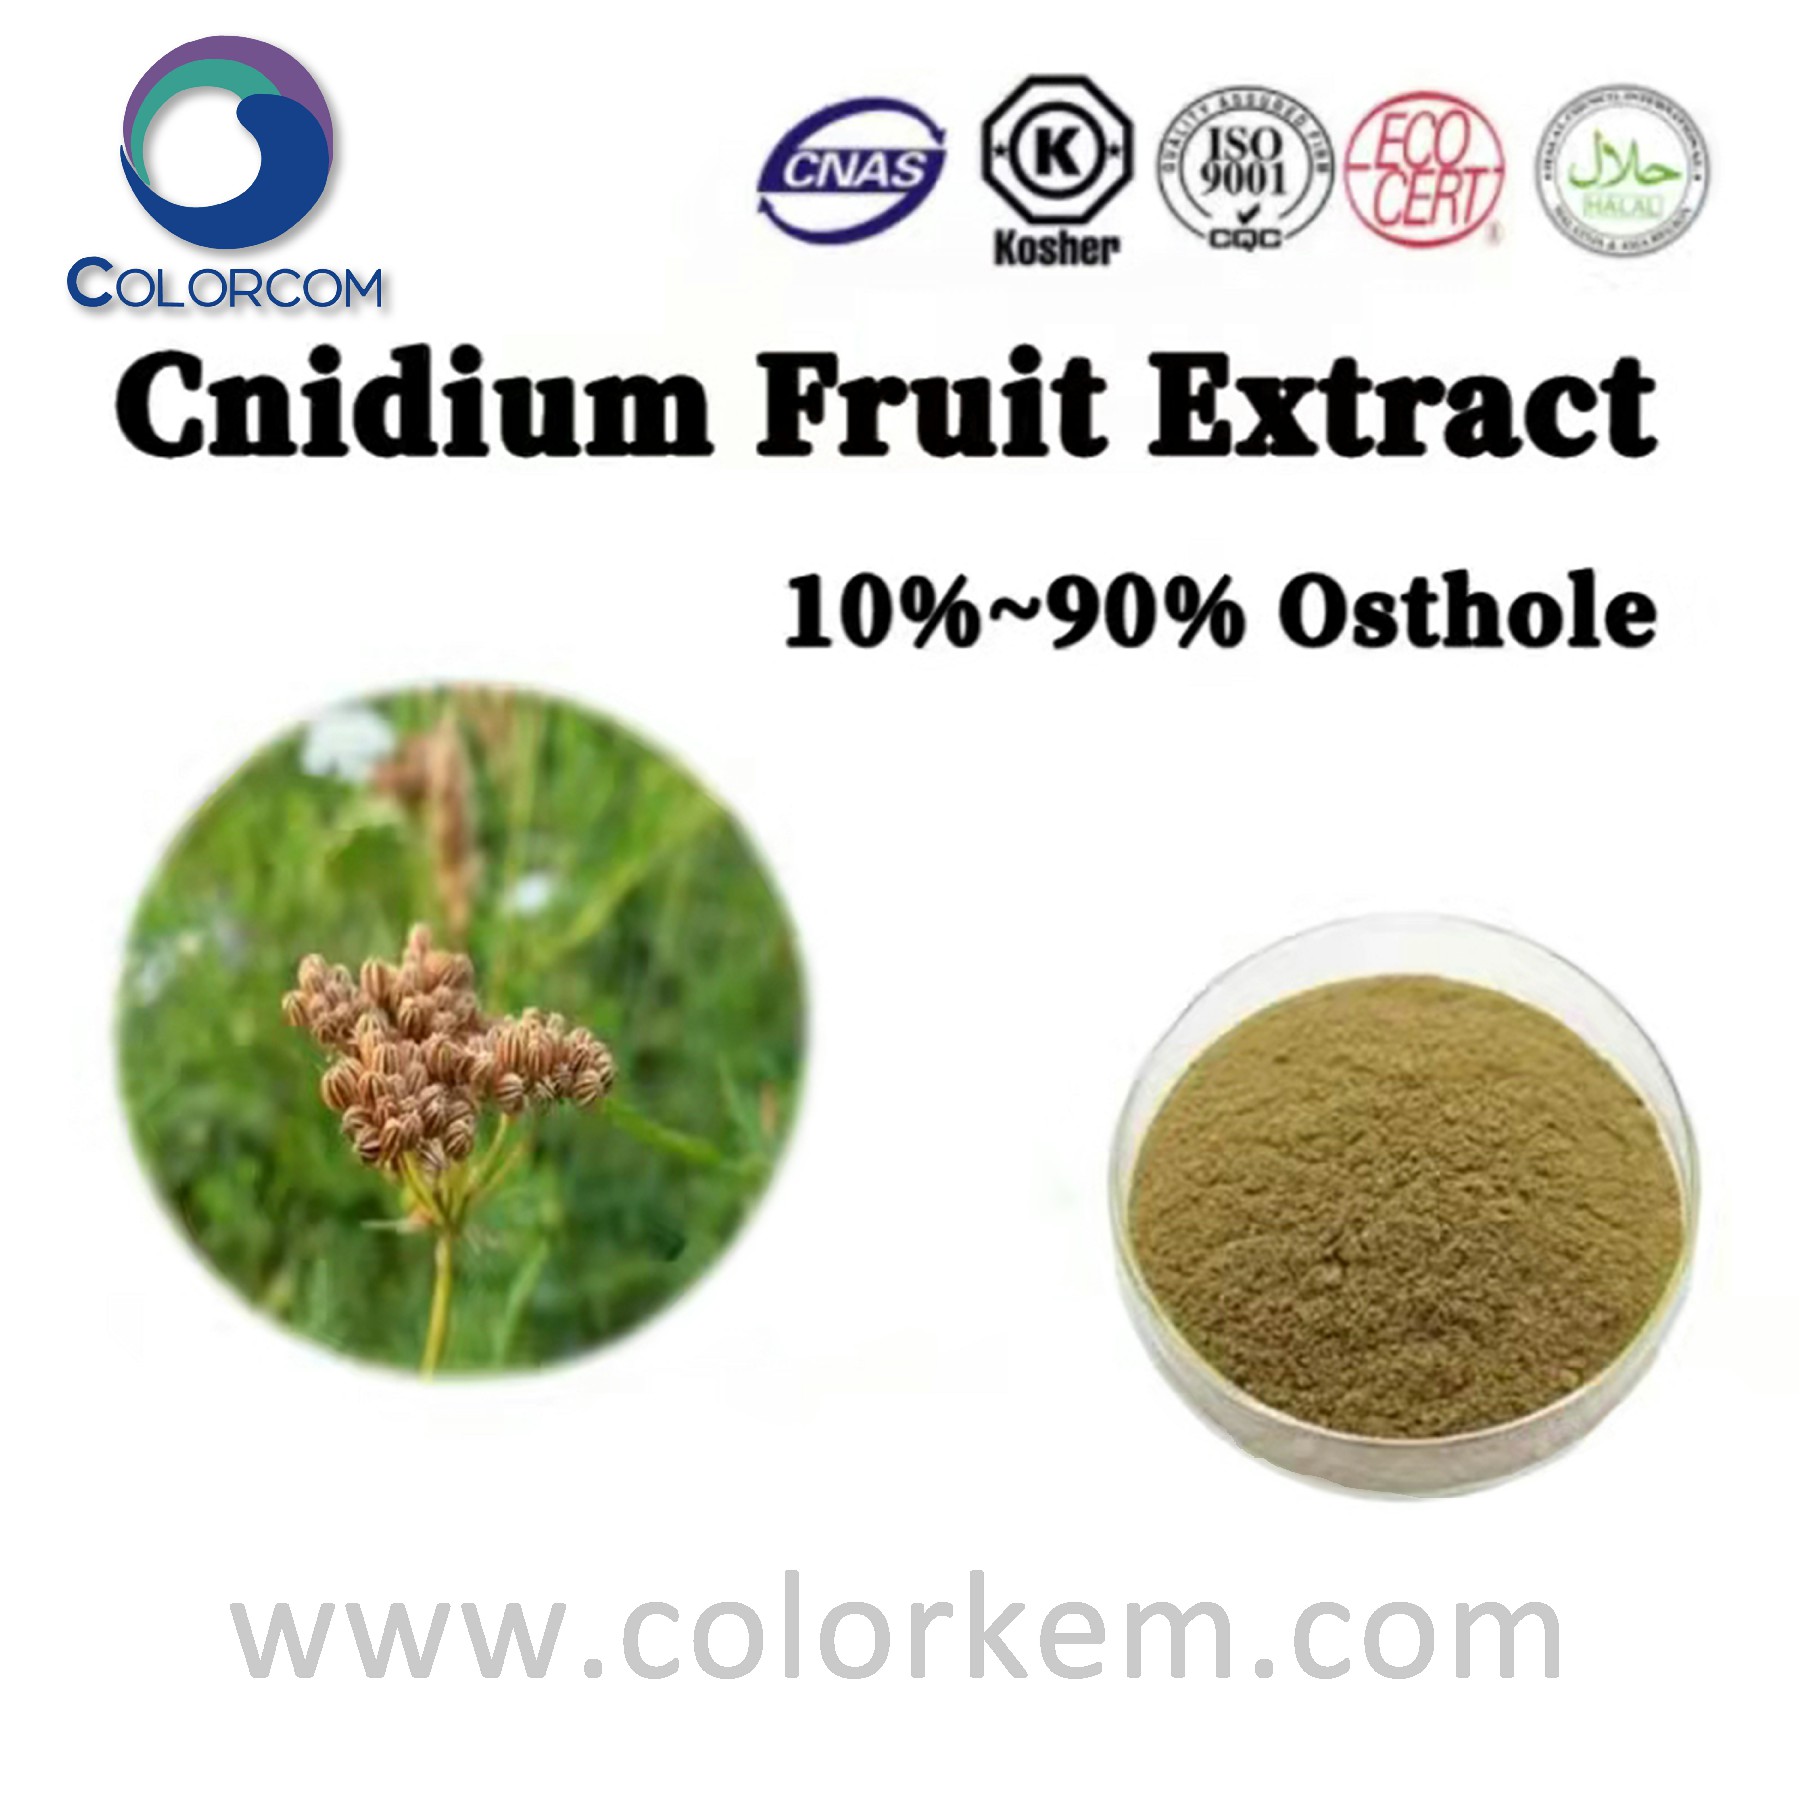 Cnidium fruit extract osthole